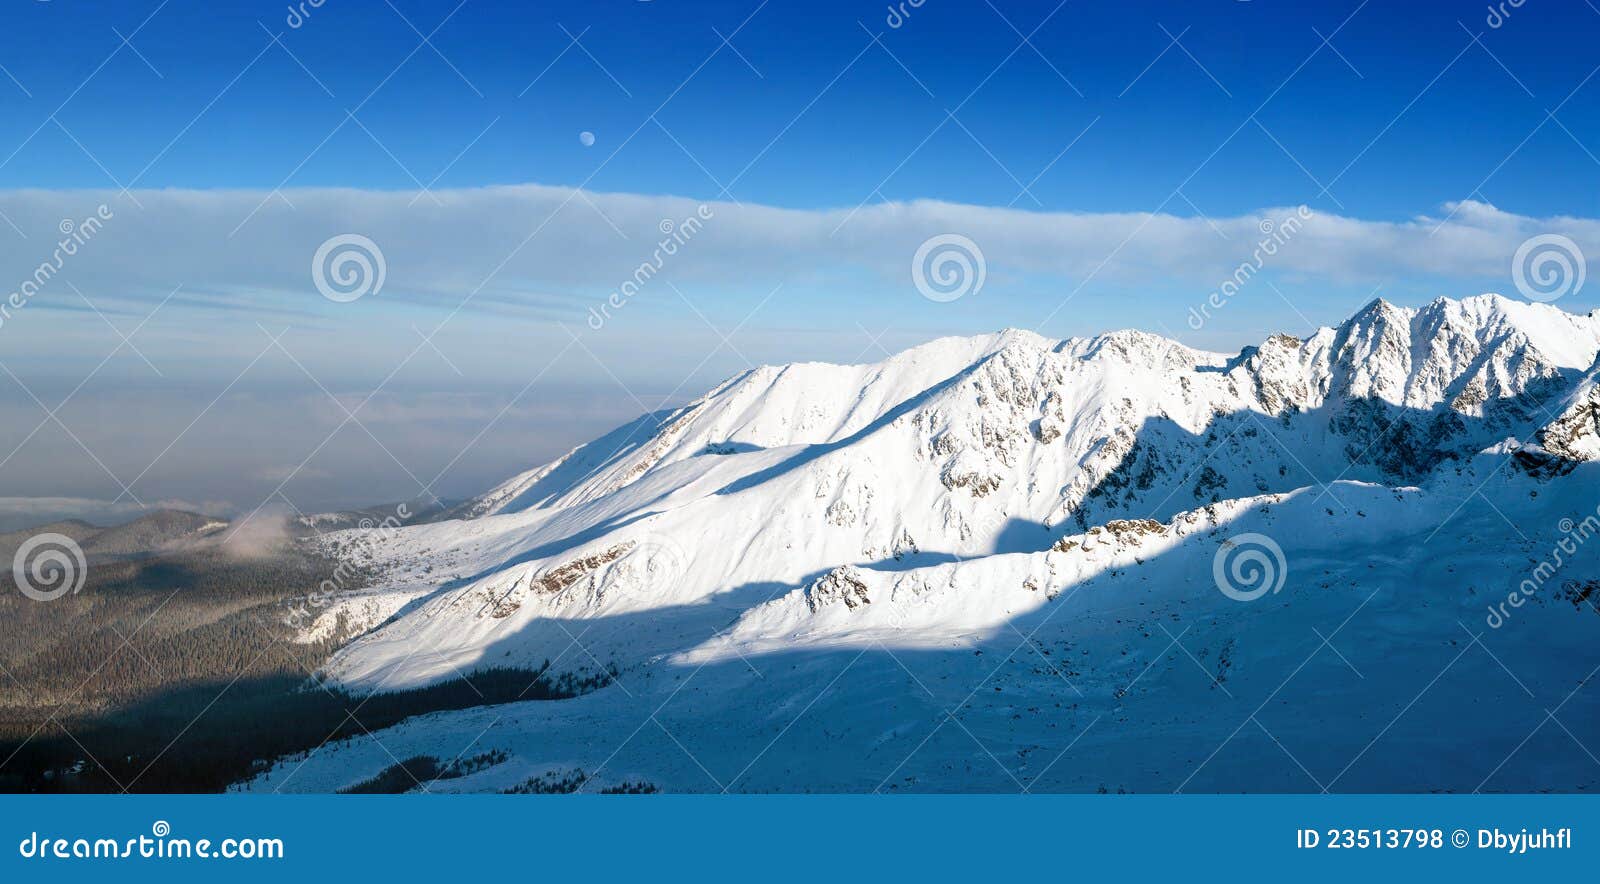 Poolse Tatras. Zakopane. Dit is de hoogste berg in alle Karpatische Bergen, waarde inwoners van de vlaktes de enige echte bergen in Polen wordt beschouwd.